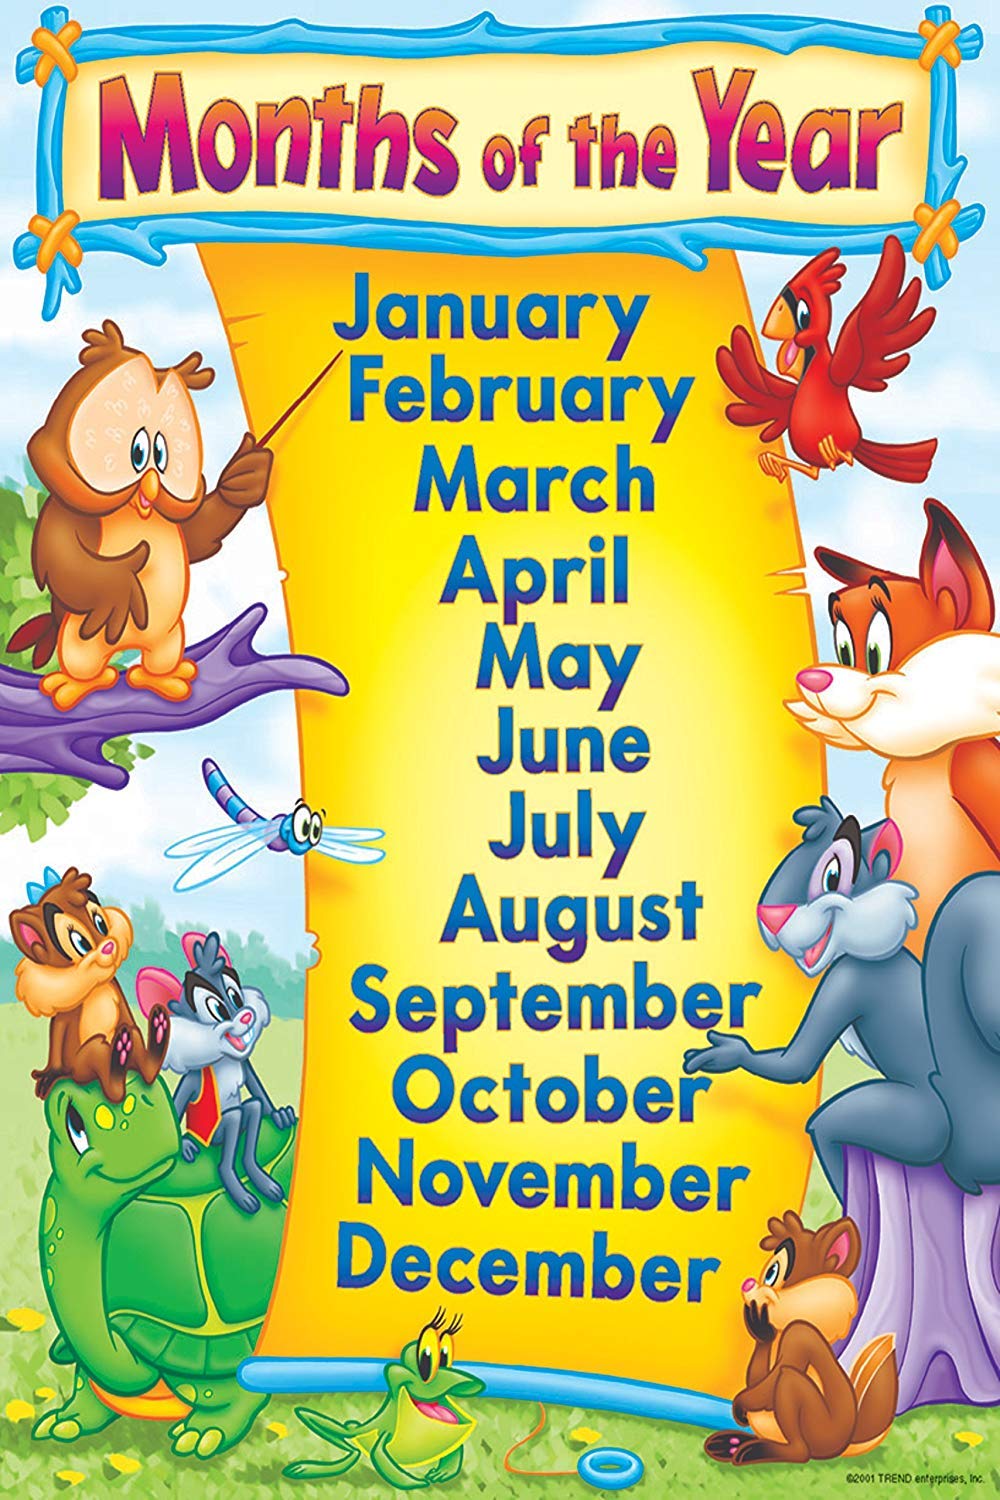 February is month of the year. Месяца на английском языке. Месяца года на английском. Месяцы на английском для детей. Месяца на английском картинки для детей.